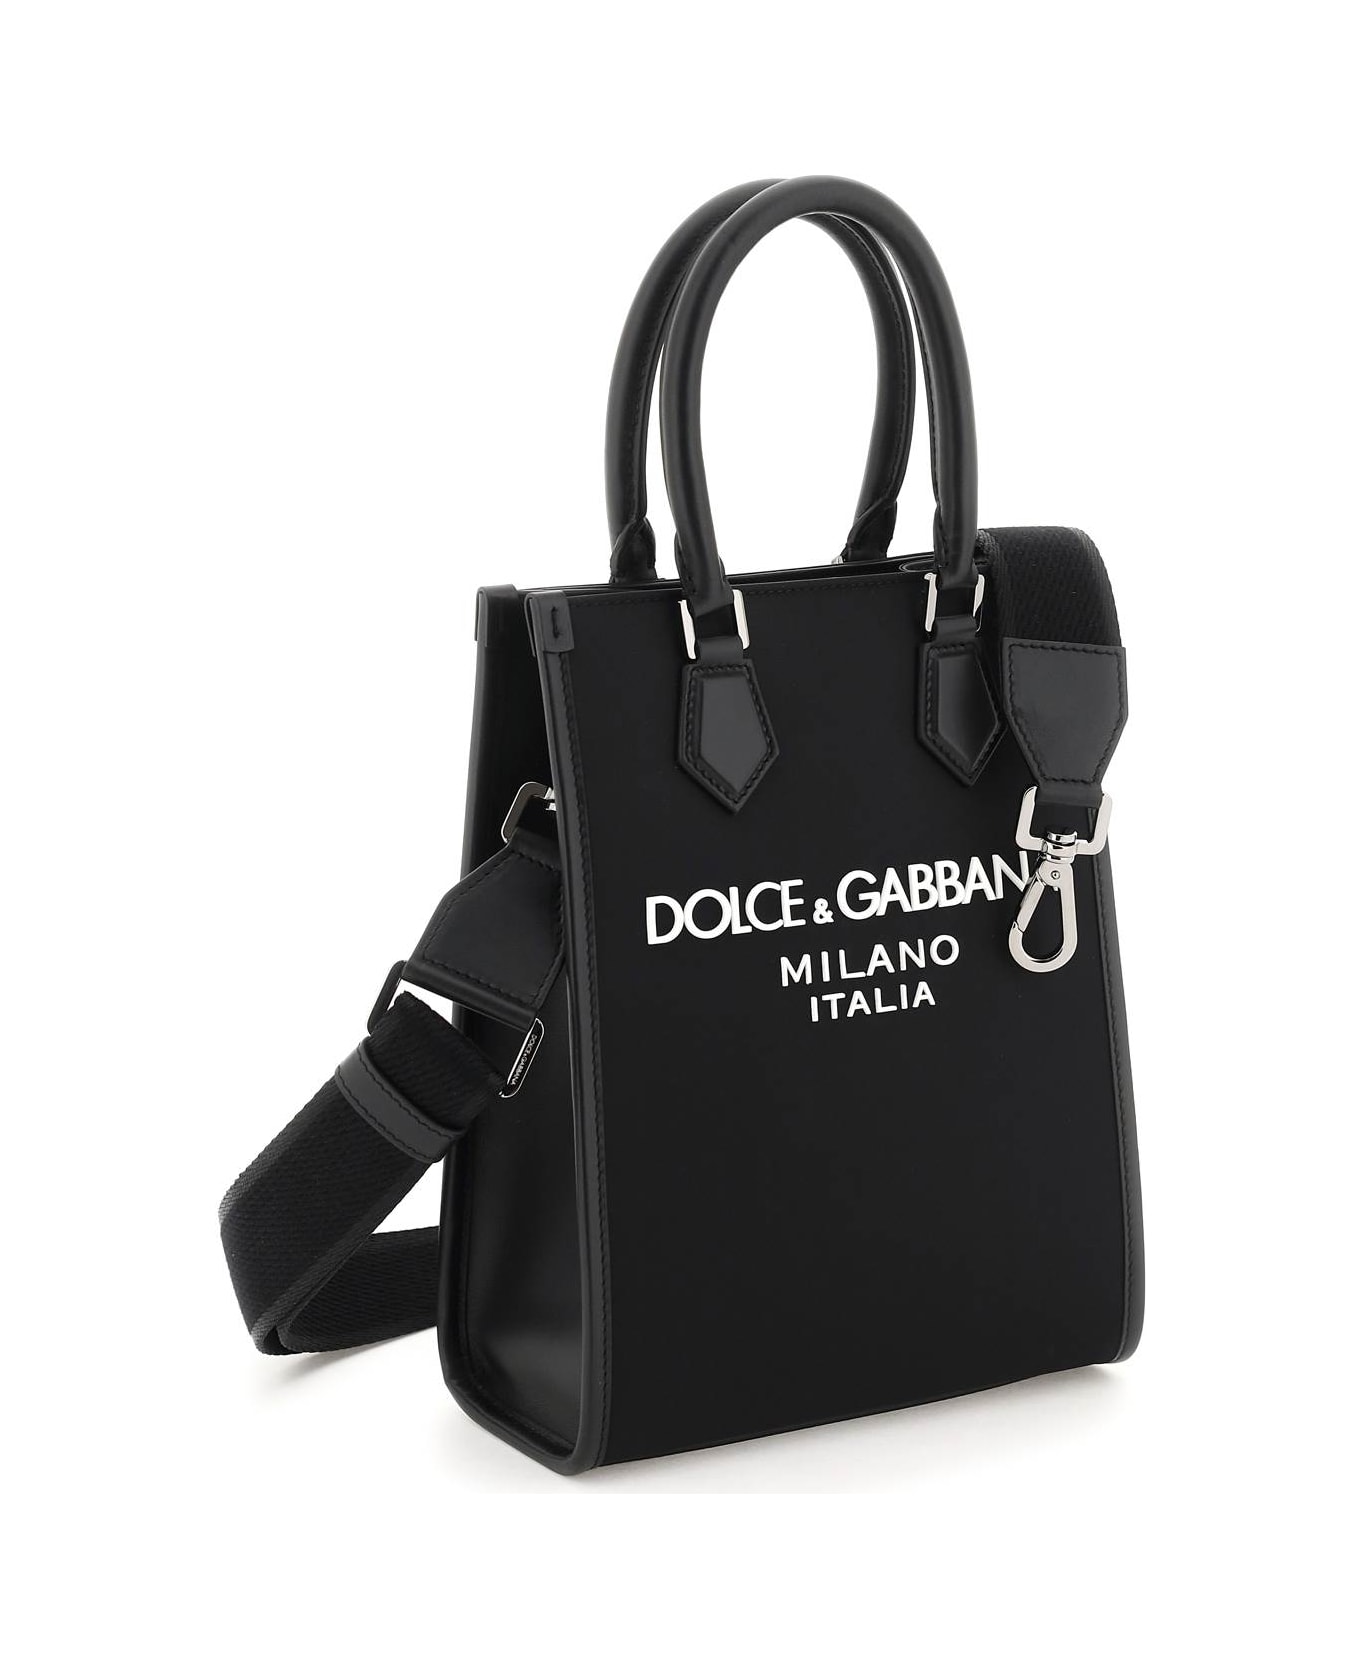 Dolce & Gabbana Small Nylon Tote Bag With Logo - Nero/nero